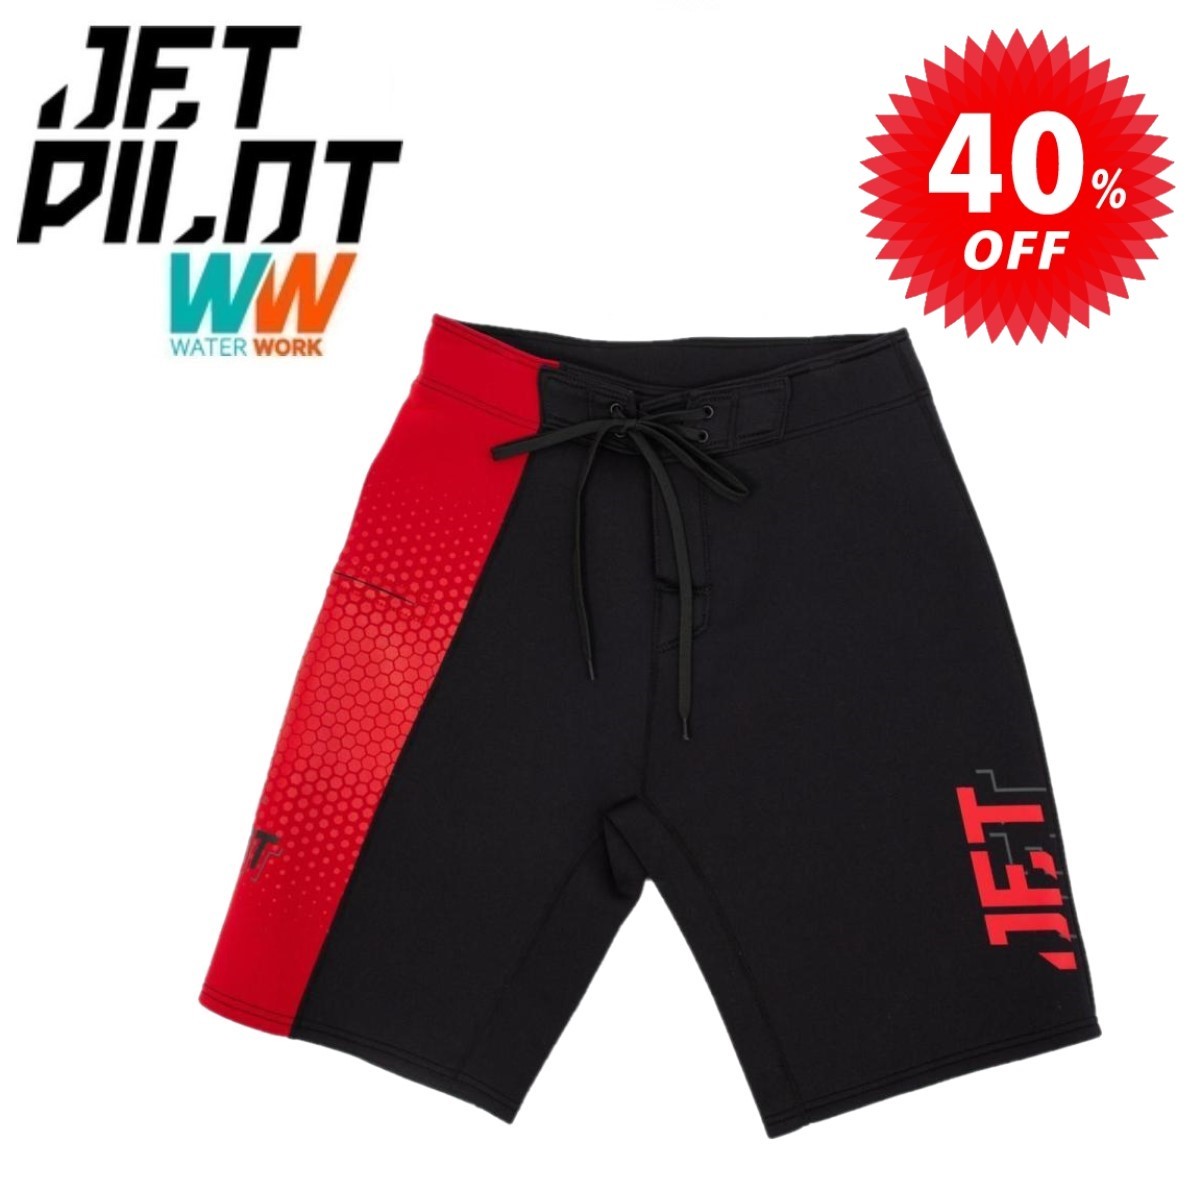 ジェットパイロット JETPILOT 海パン セール 40%オフ 送料無料 フライト ネオ ボードショーツ JA22900 ブラック/レッド M